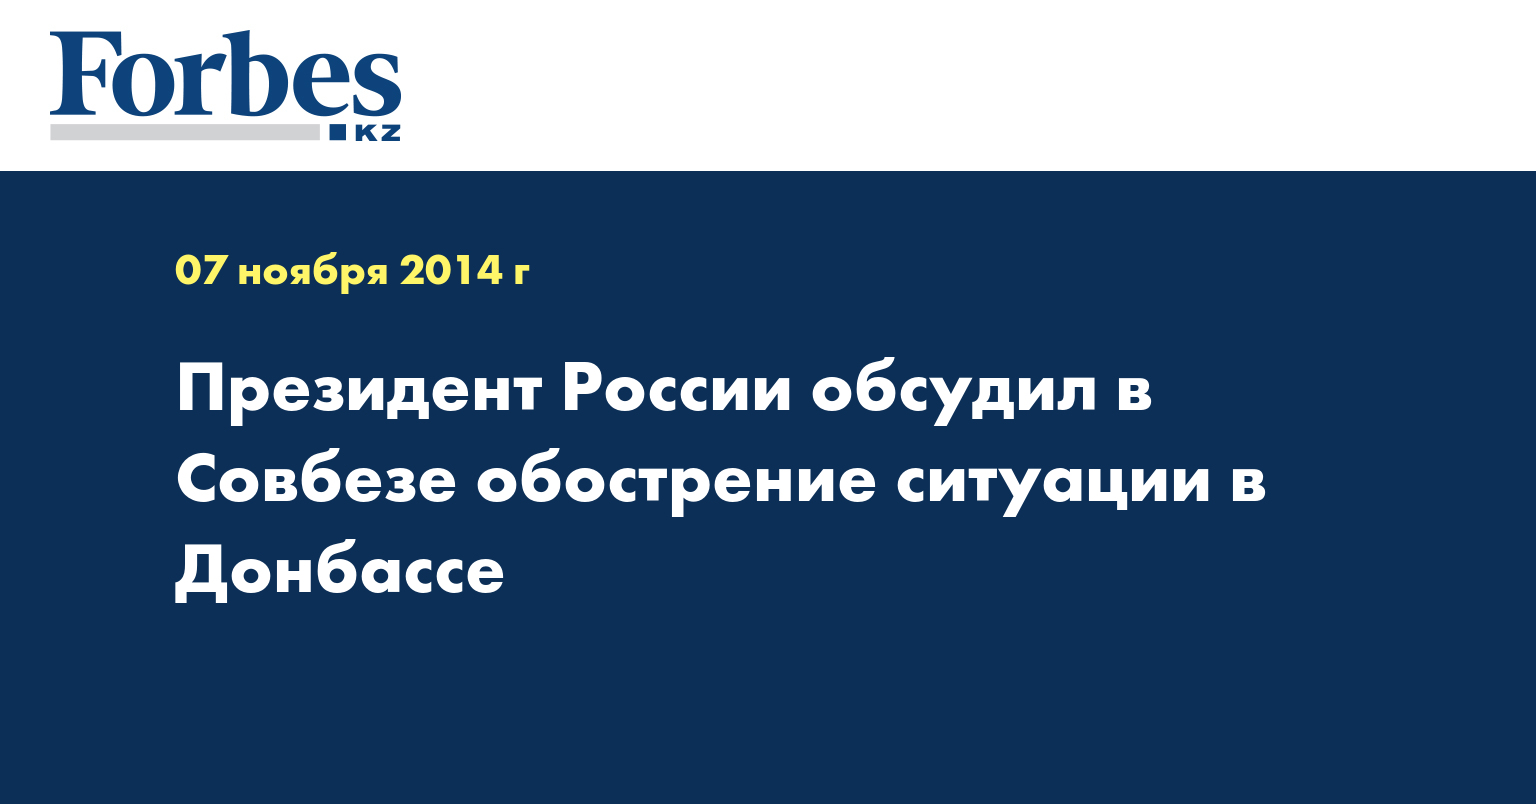 Президент России обсудил в Совбезе обострение ситуации в Донбассе